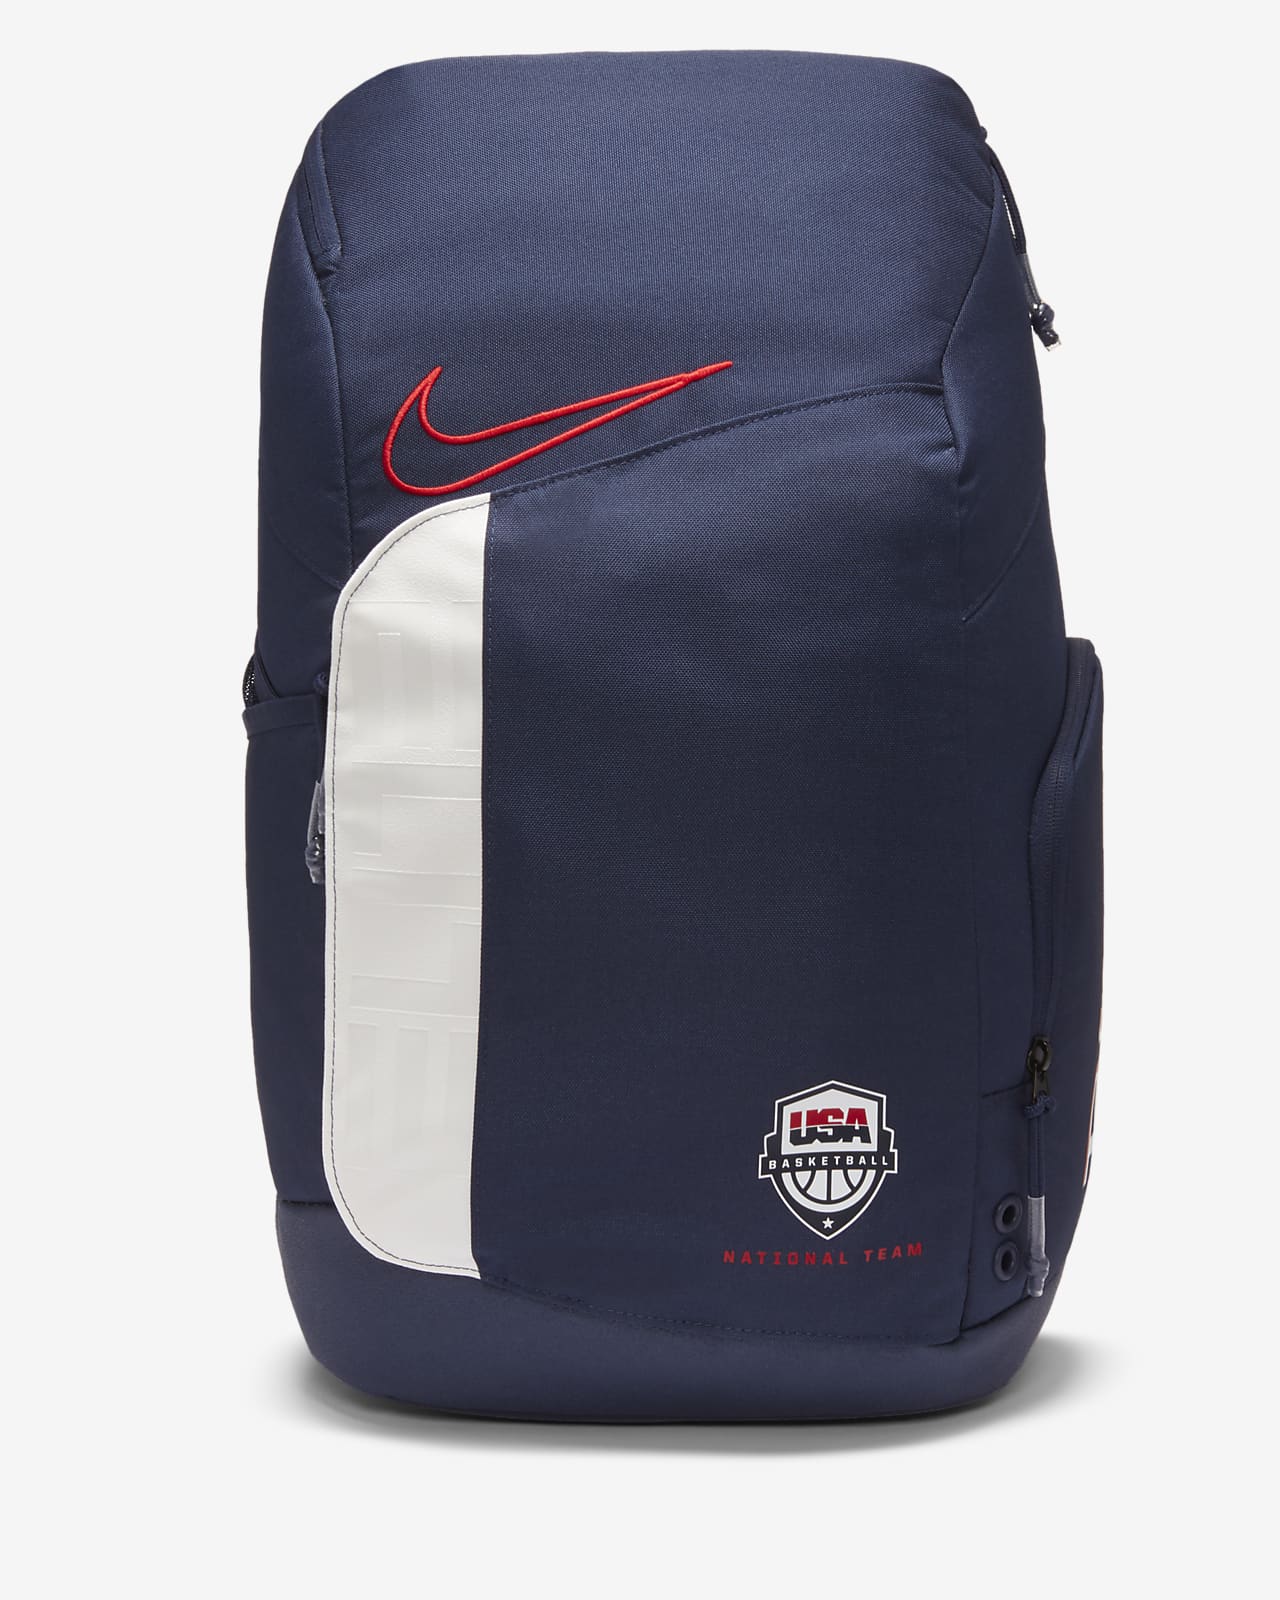 Customize Backpack Nike | lupon.gov.ph